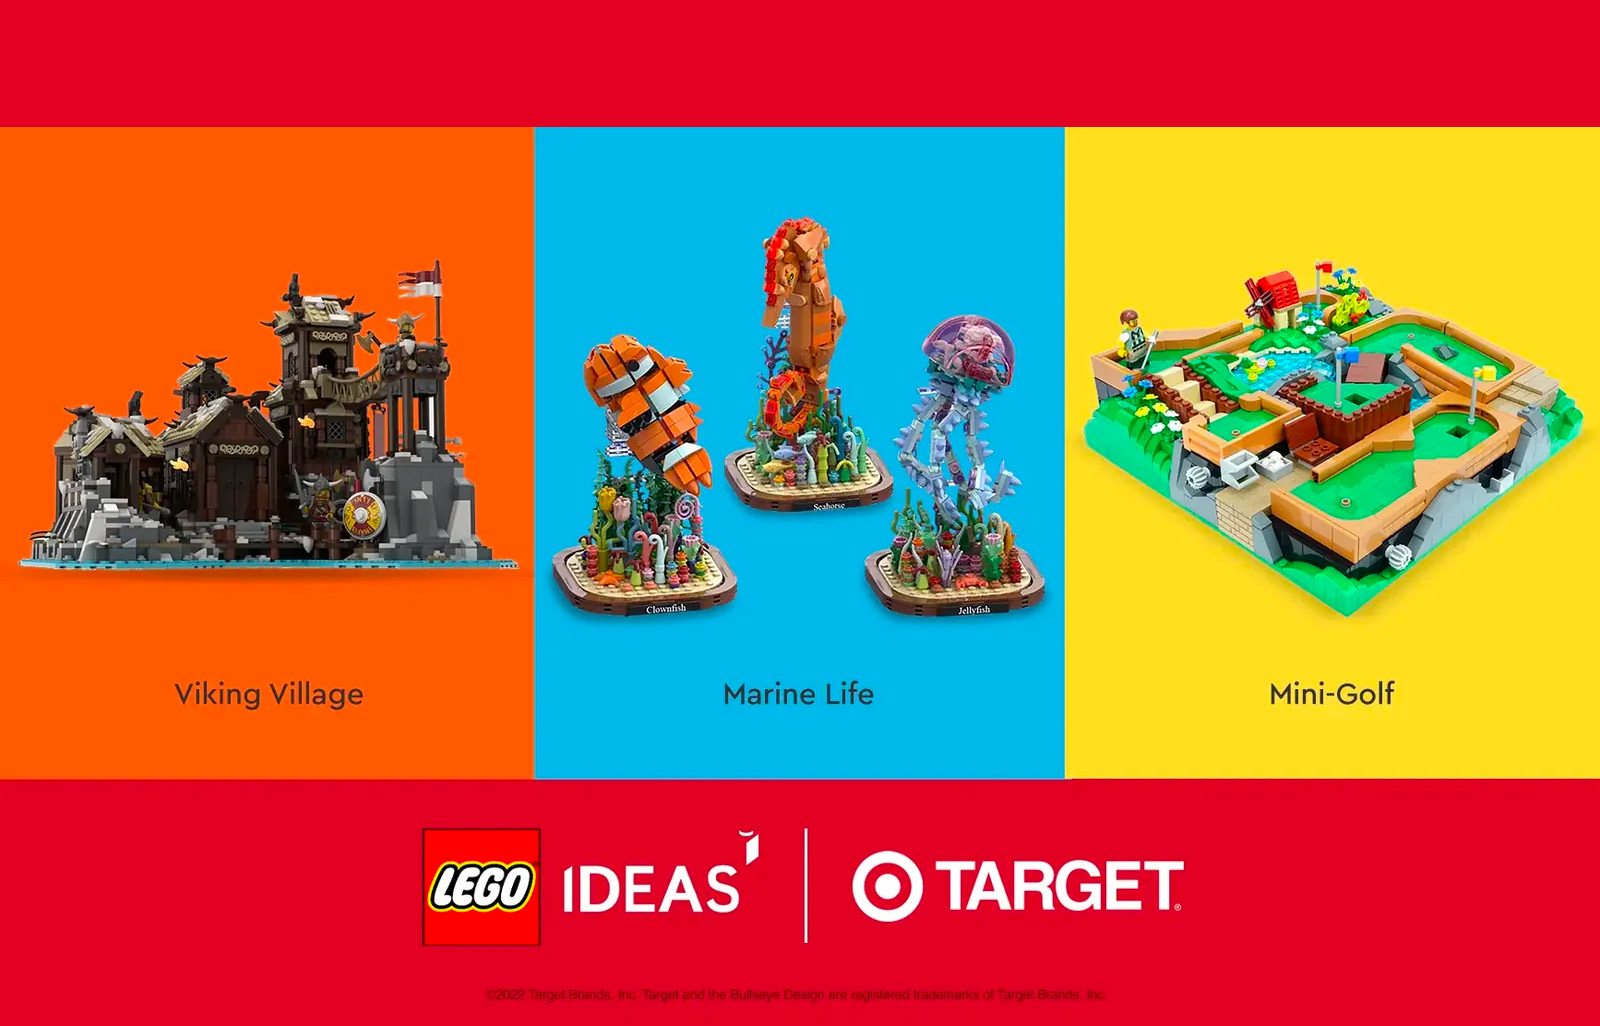 लक्ष्य X लेगो विचार: श्रेणी में अगले सेट के लिए वोट करना आप पर निर्भर है